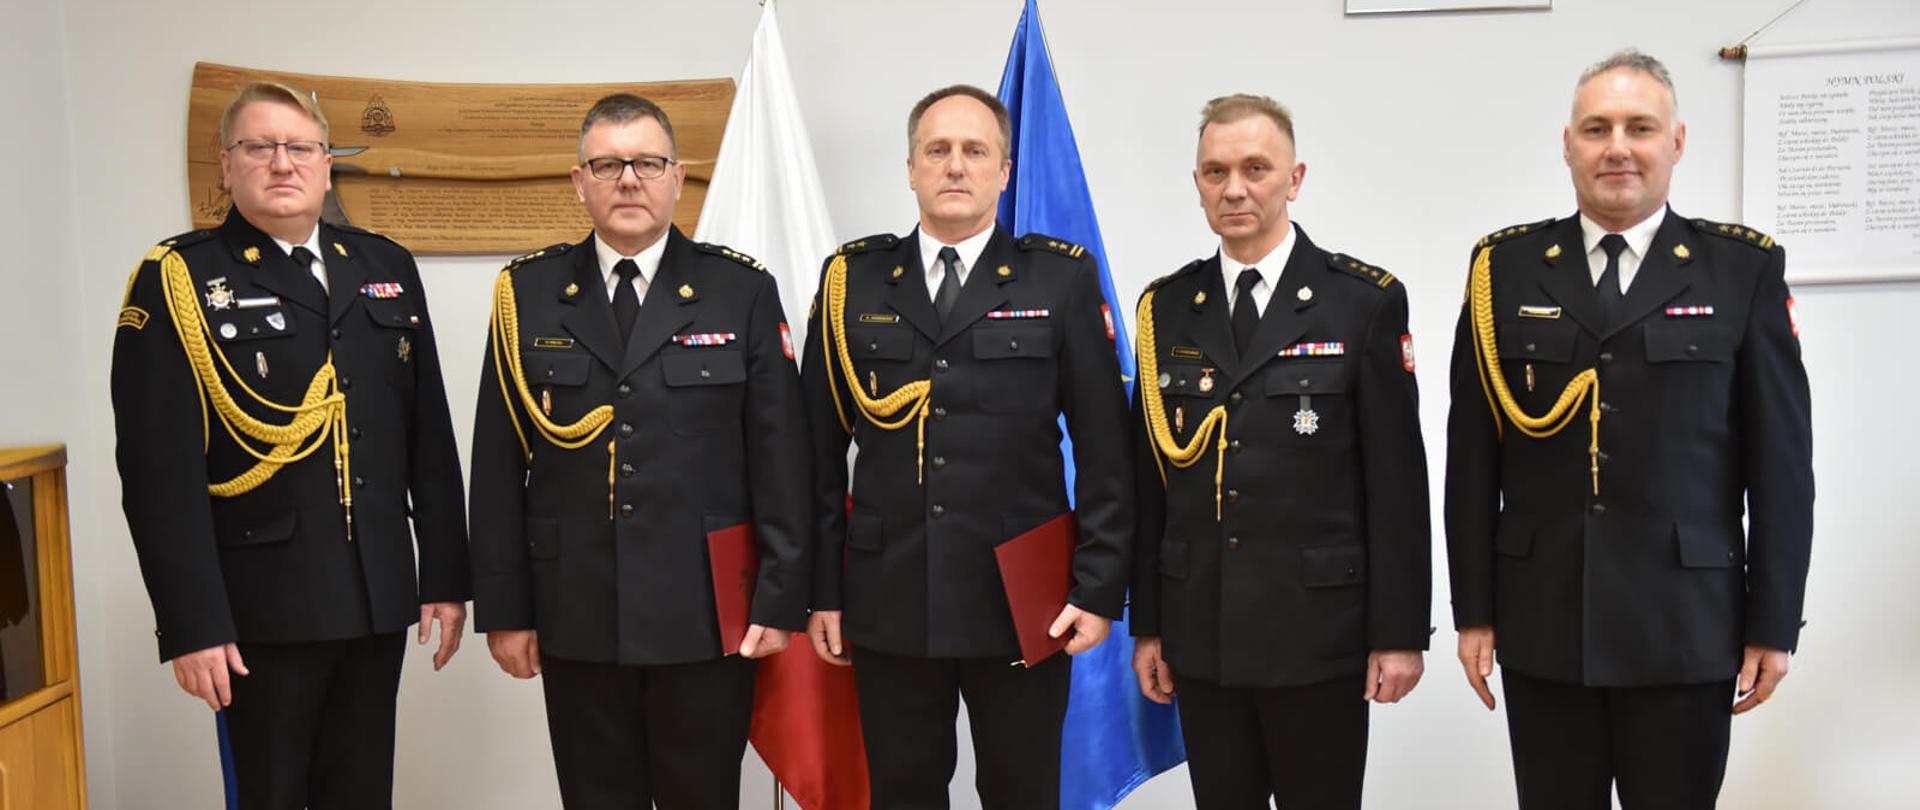 pięciu strażaków w mundurach galowych pozuje do zdjęcia na tle flagi polski i unii europejskiej